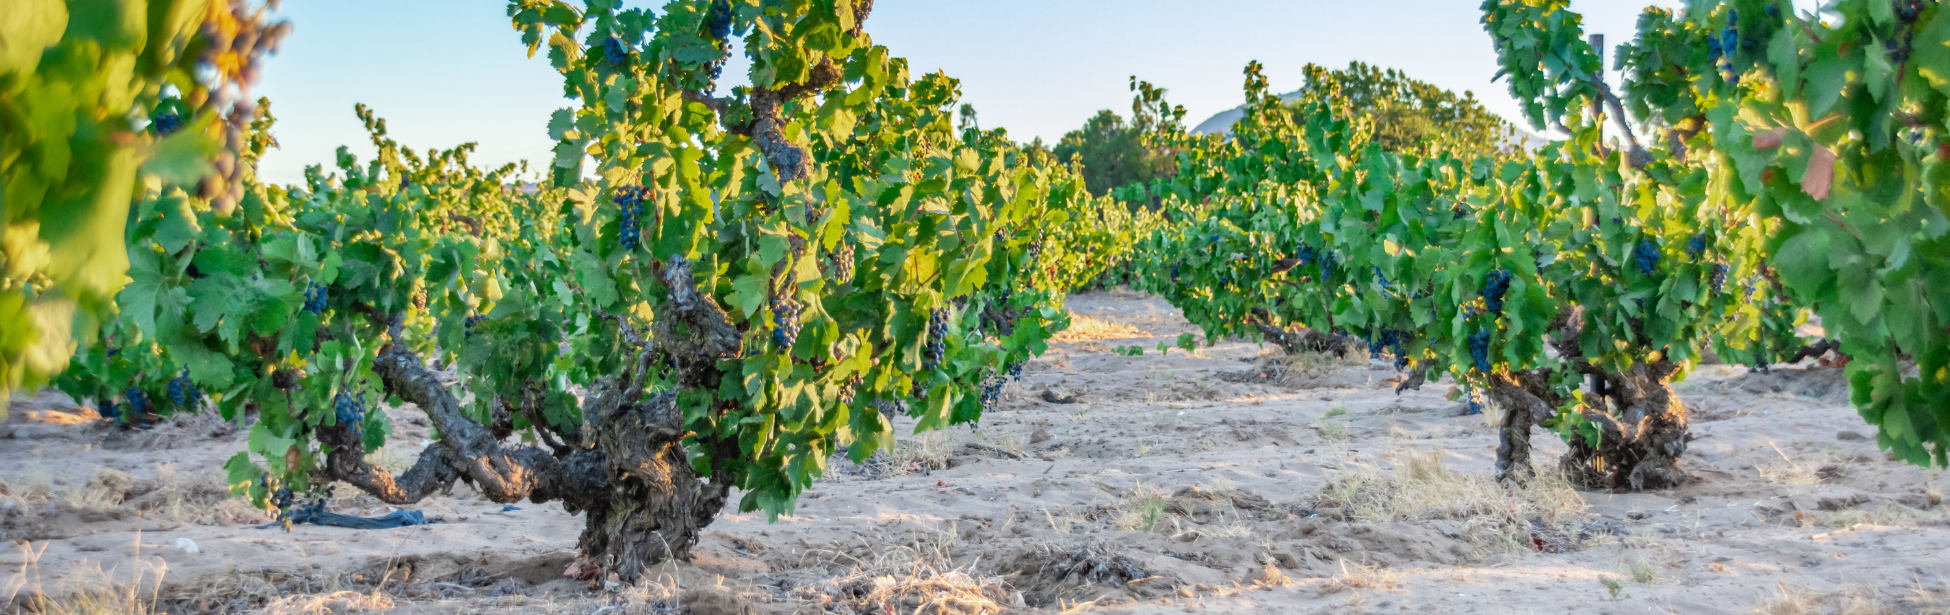 Photo of sandy lane vineyard